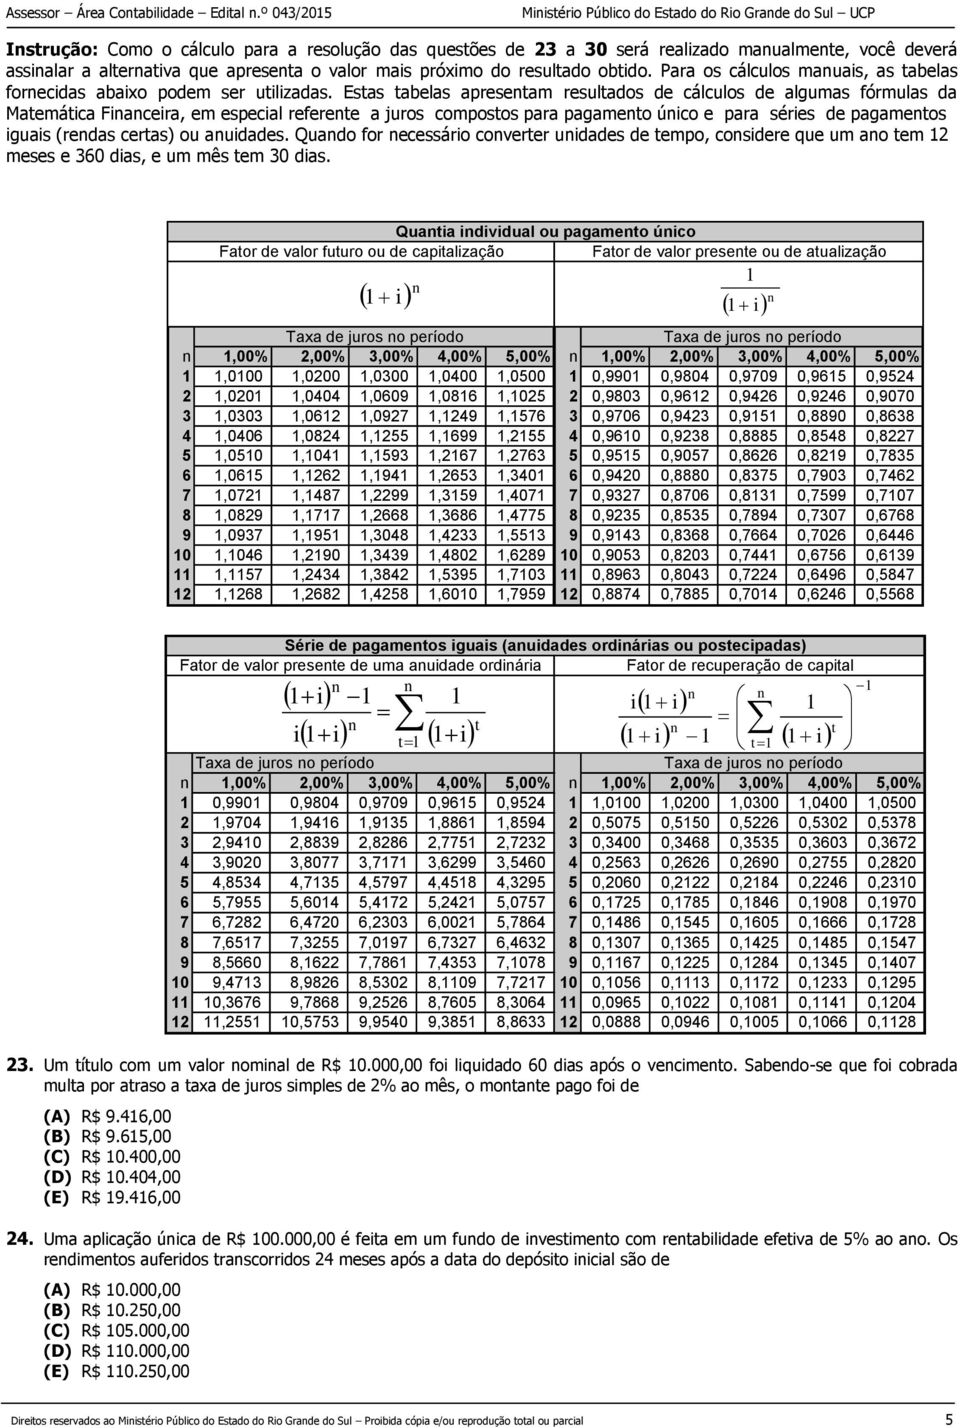 Estas tabelas apresentam resultados de cálculos de algumas fórmulas da Matemática Financeira, em especial referente a juros compostos para pagamento único e para séries de pagamentos iguais (rendas